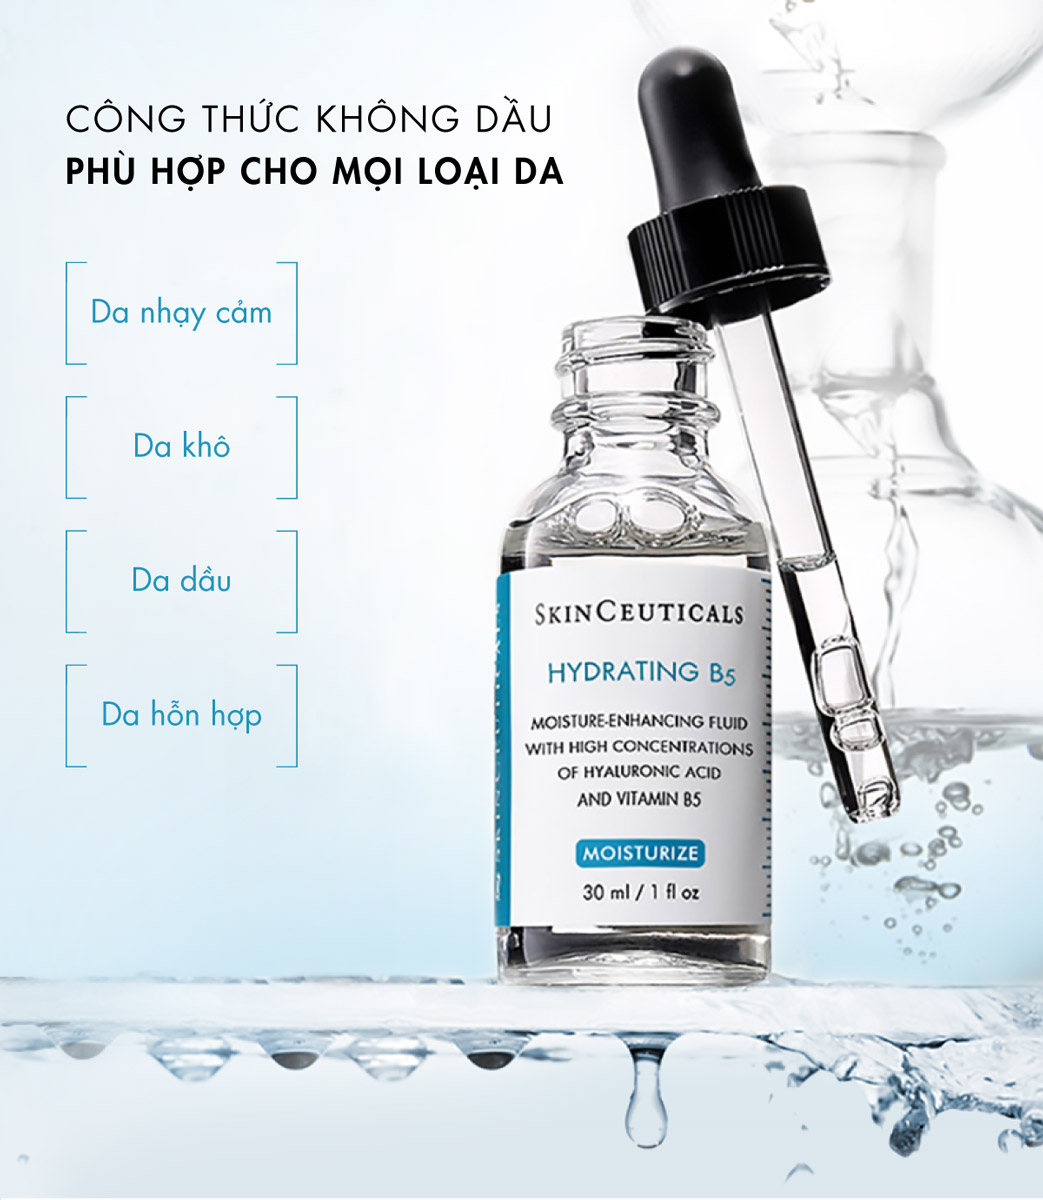 Tinh Chất SkinCeuticals Hydrating B5 không chứa dầu, không gây bít tắc lỗ chân lông